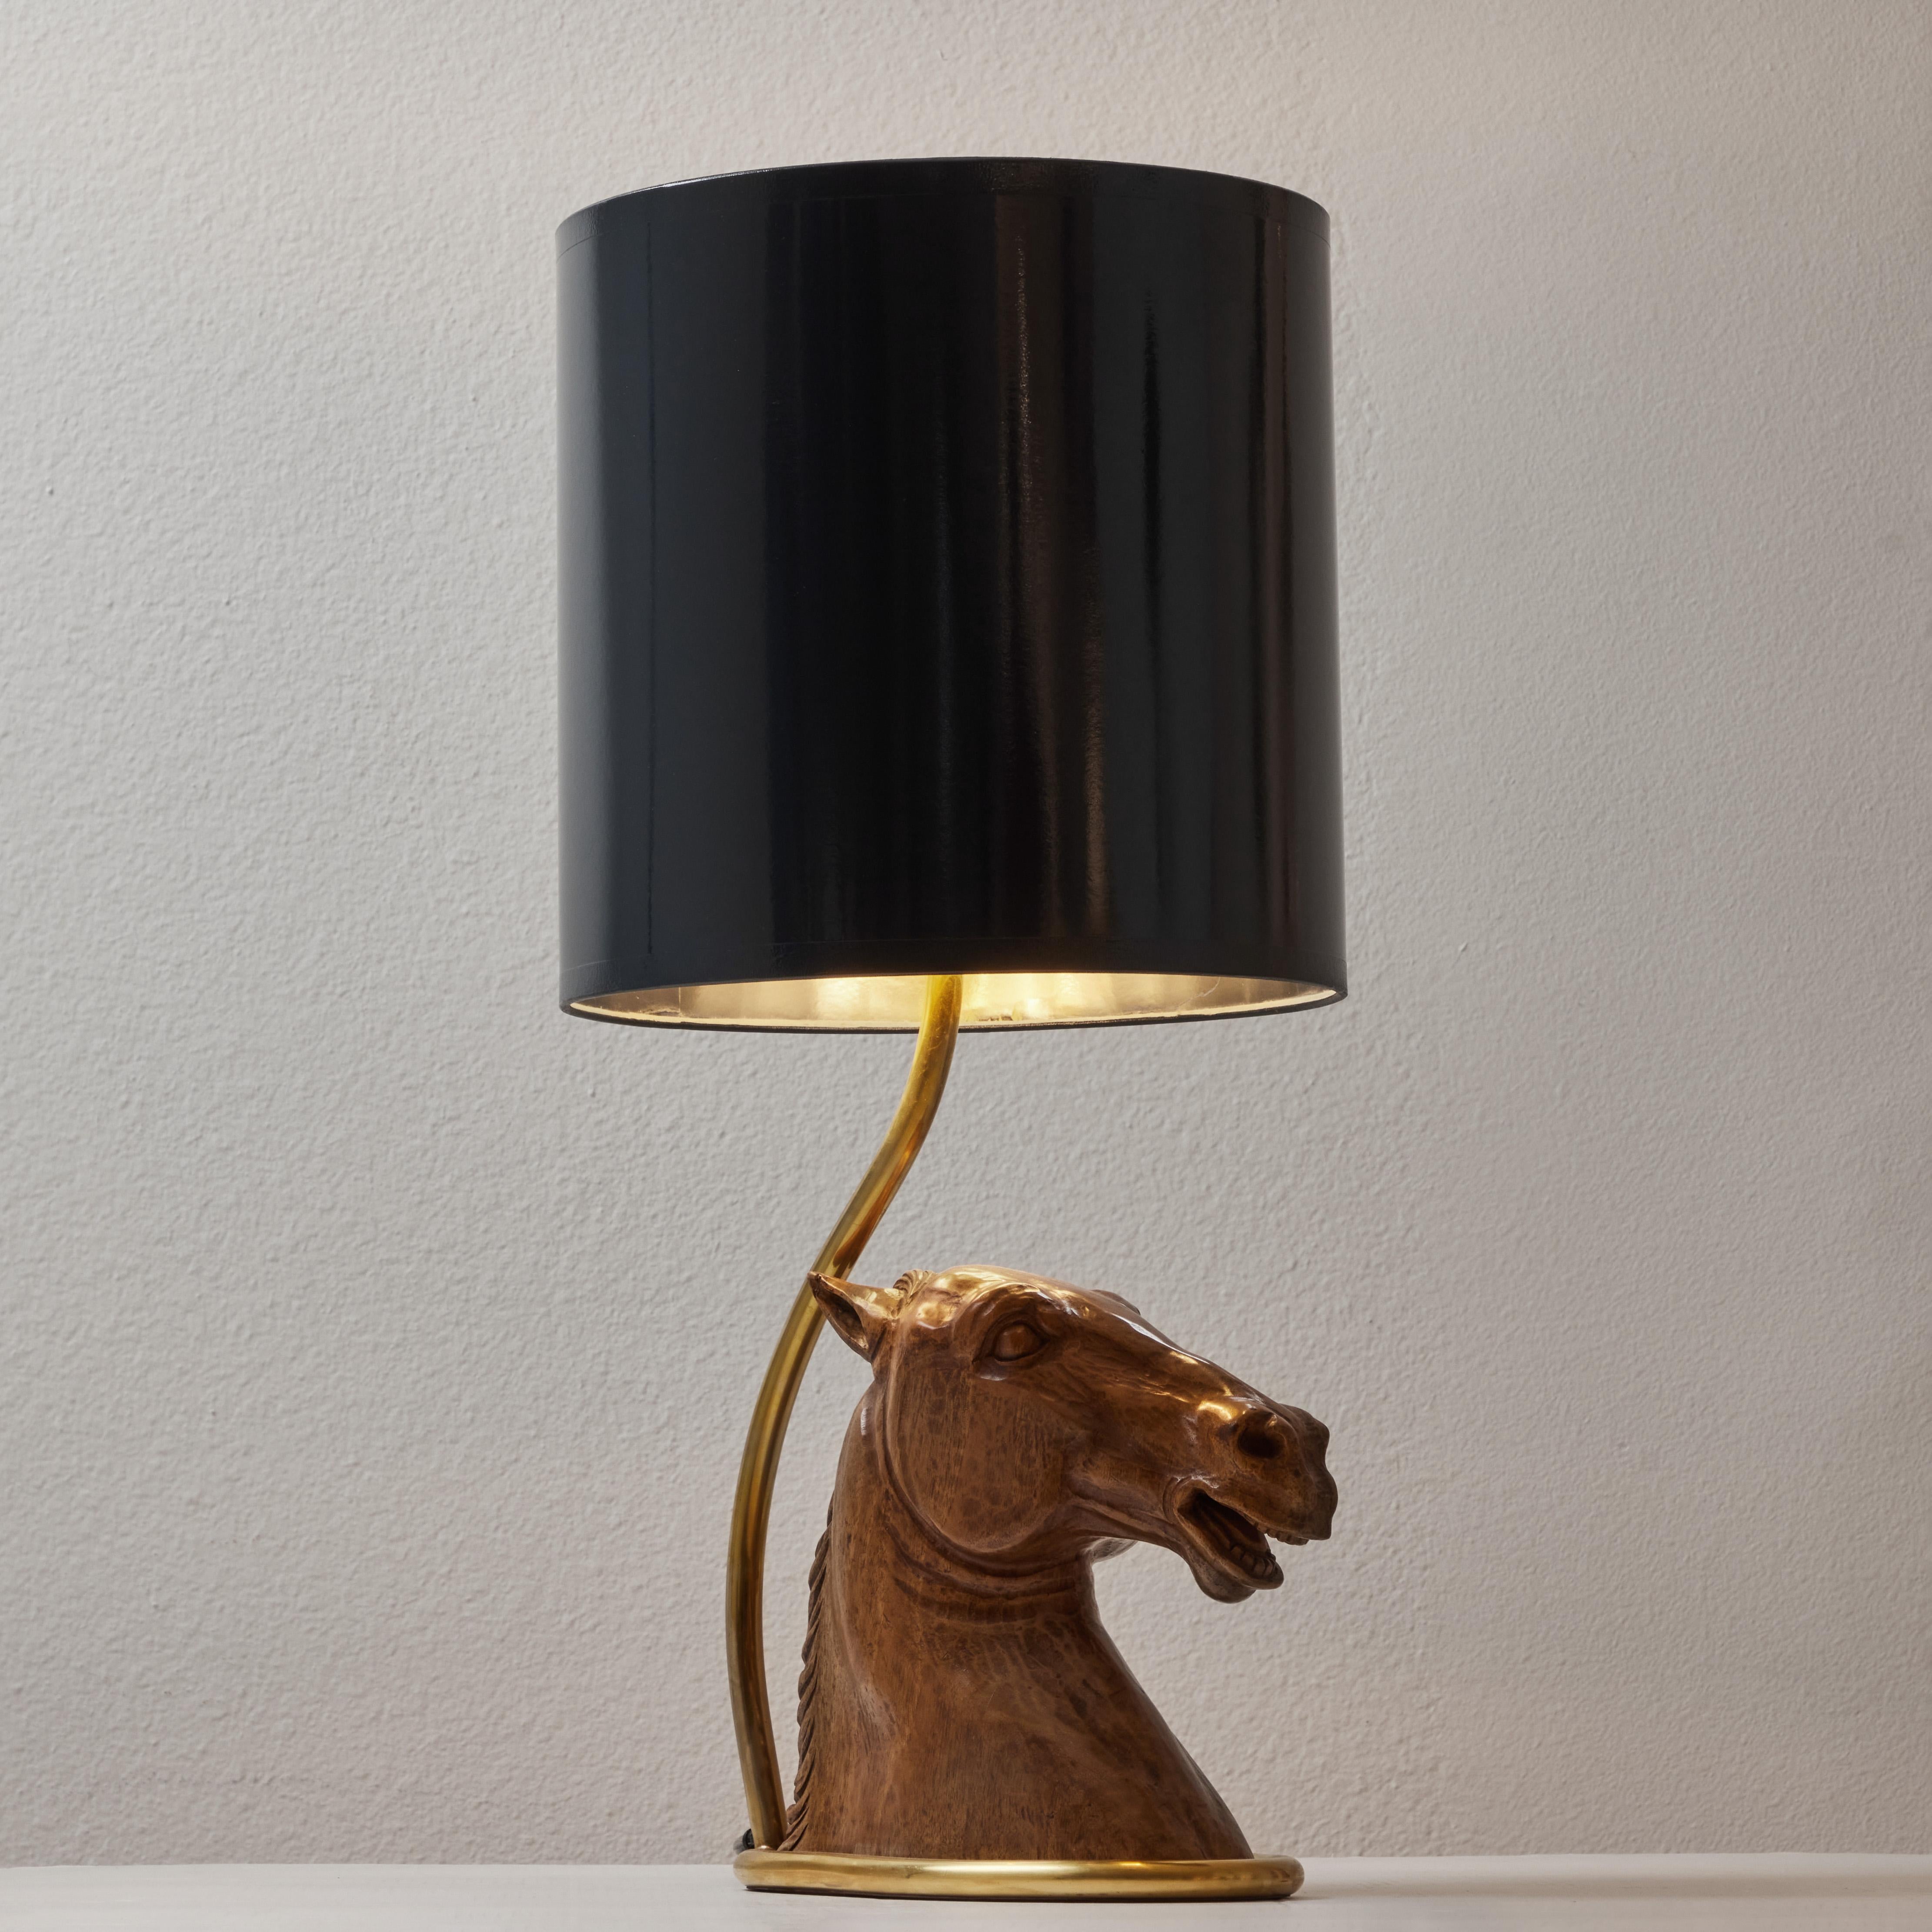 Diese Lampe ist ein wunderbares Beispiel für die Kreativität des Hauses Gucci, das in den 1970er Jahren ein wahres Kraftzentrum für Design war. Eine schön geschnitzte hölzerne Pferdebüste, die in einem ovalen Messingbeschlag ruht, der wahrscheinlich